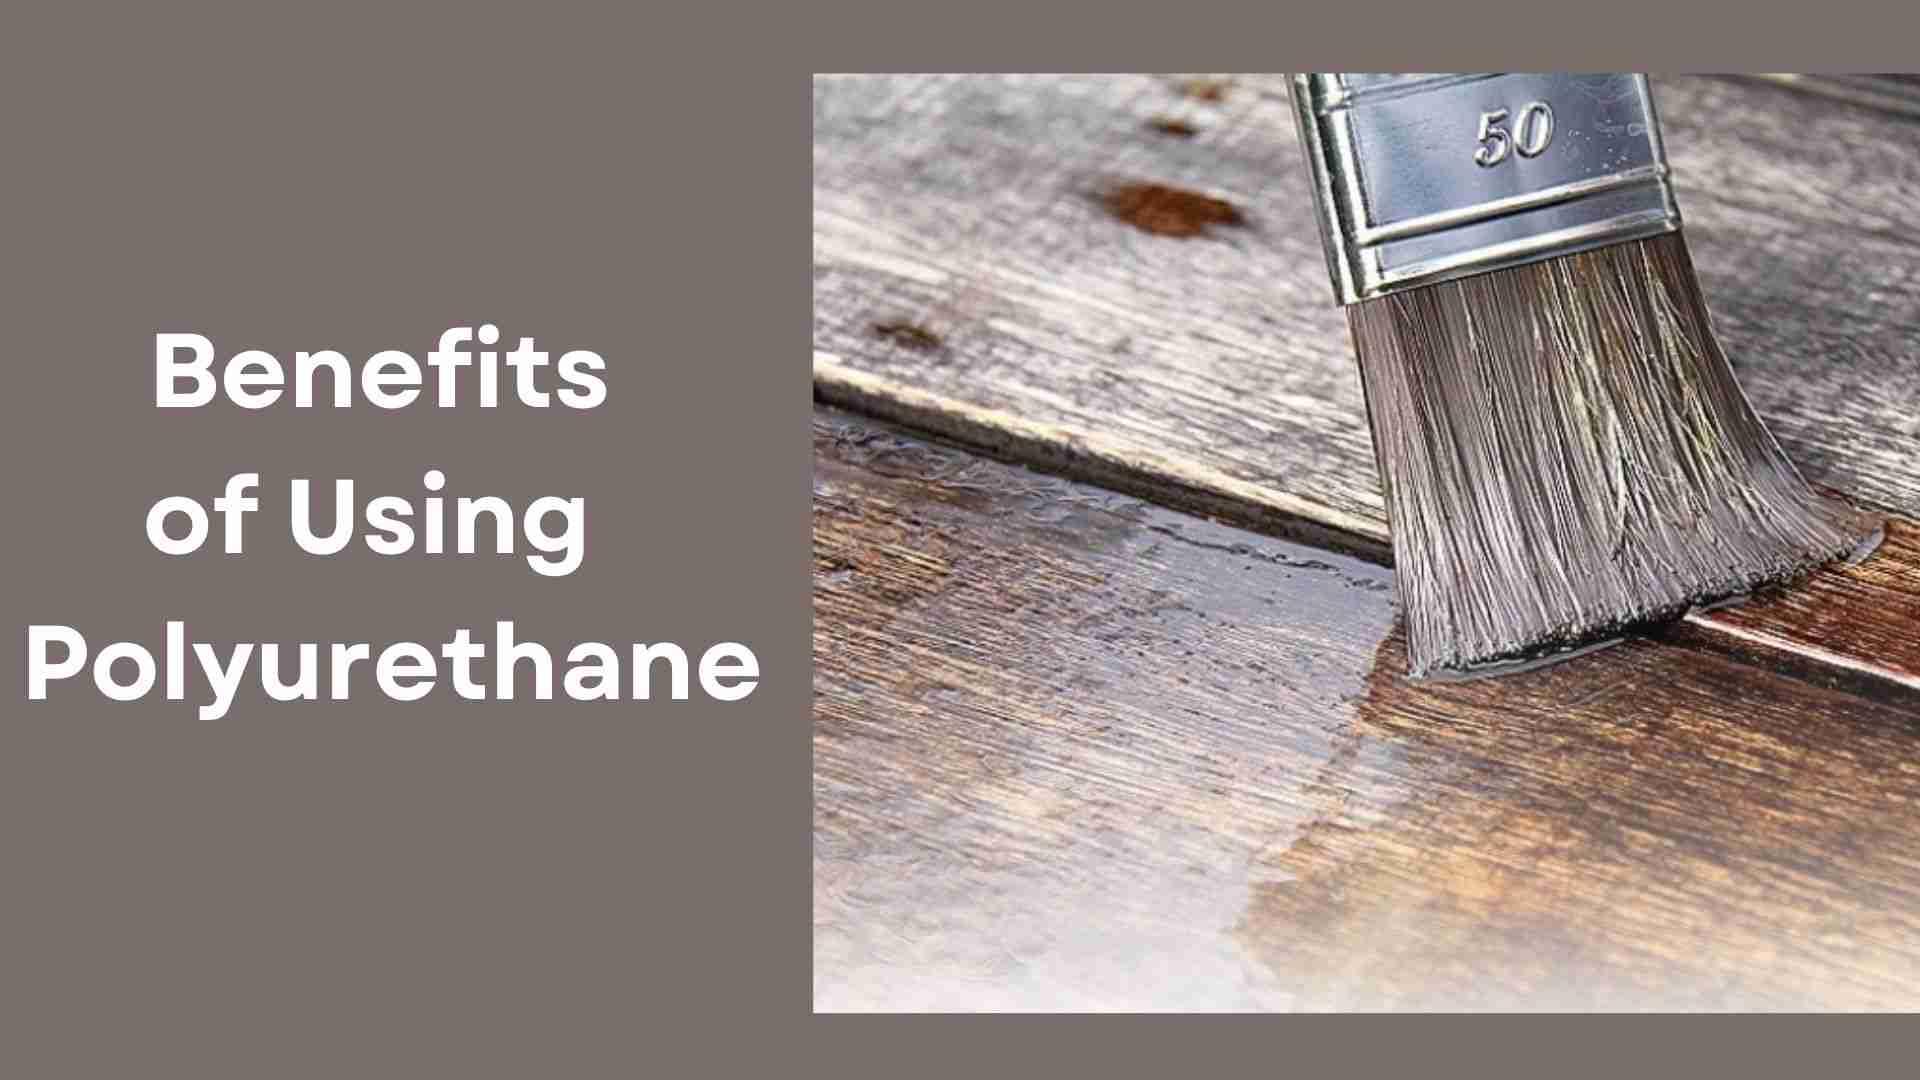 Benefits of using Polyurethane